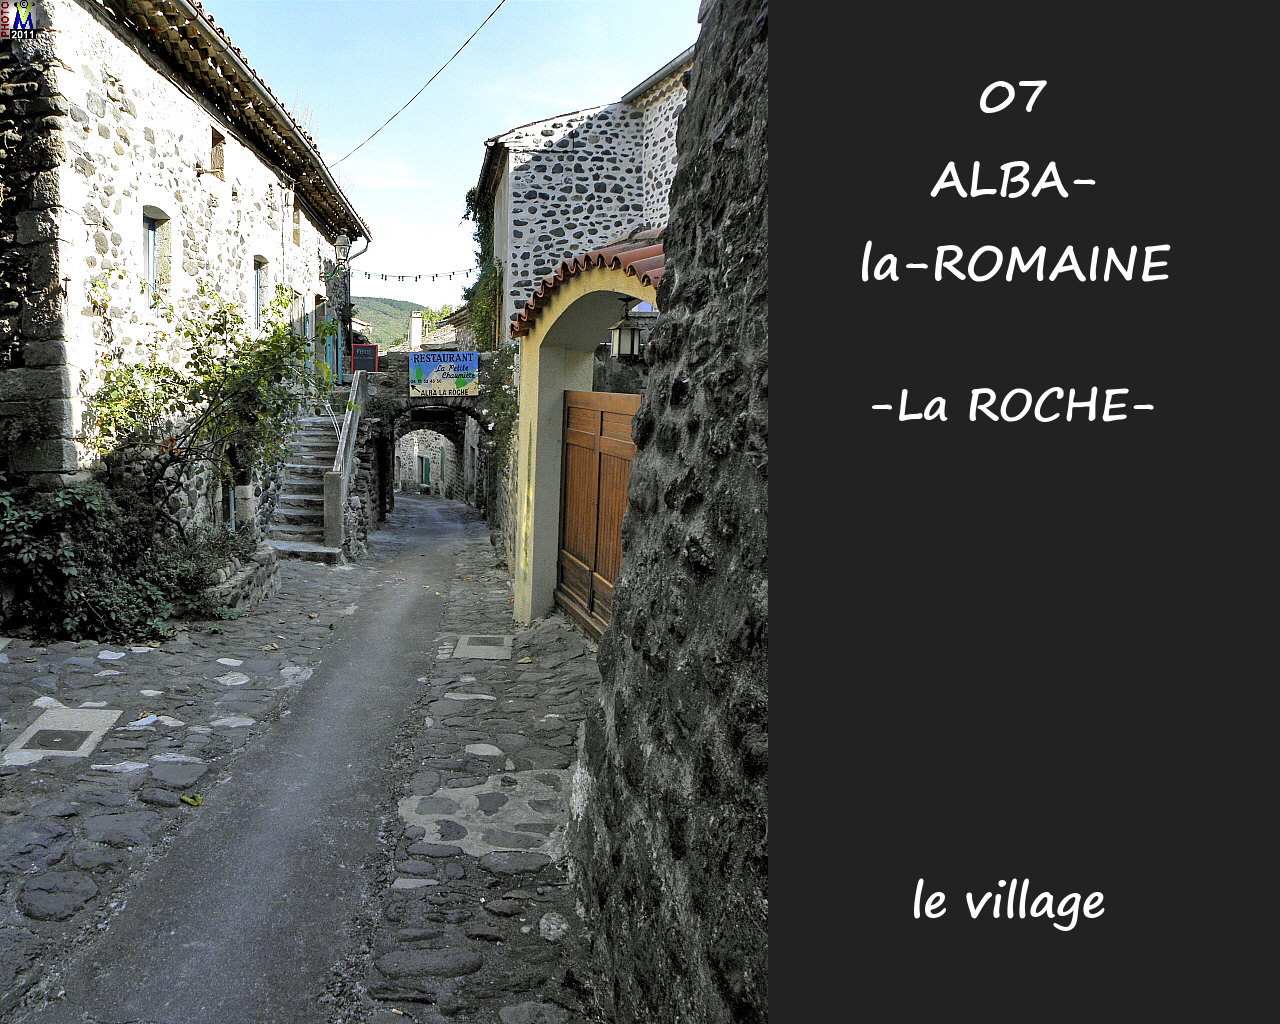 07ALBA-ROMAINEzROCHE_village_128.jpg